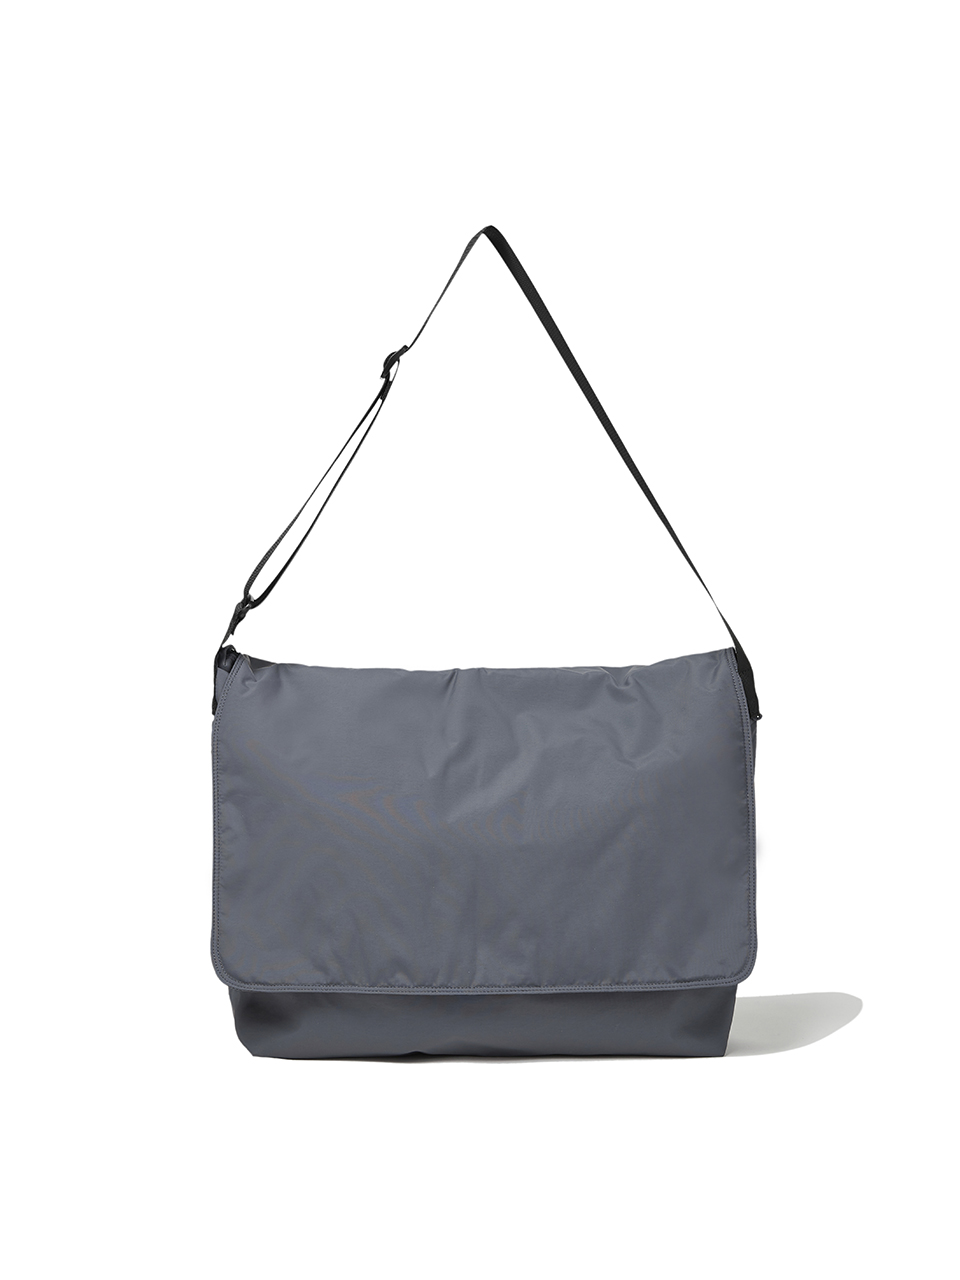 SOUNDSLIFE - Nylon Messenger Bag Charcoal